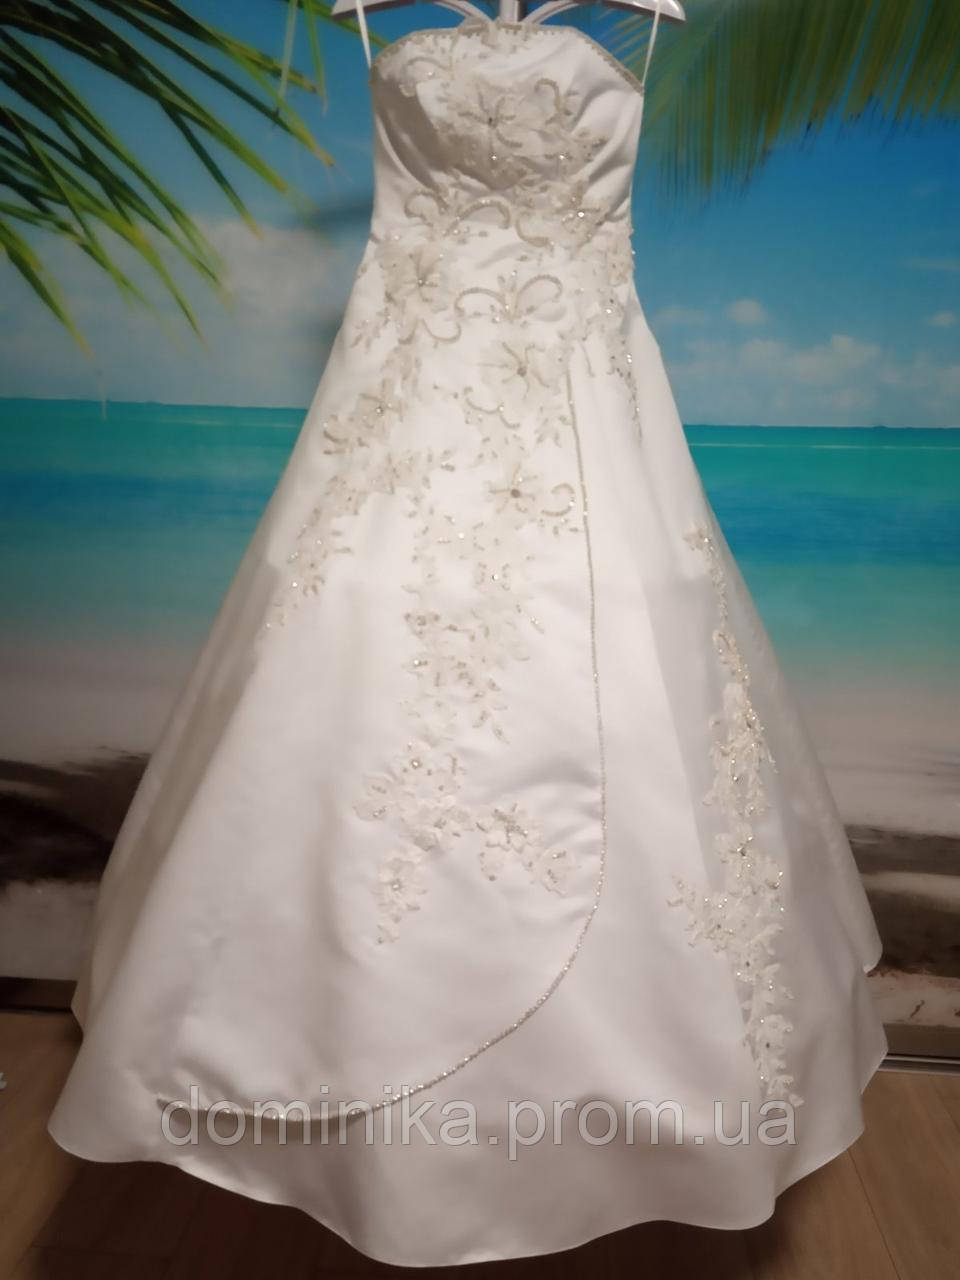 Весільна сукня біла 44-46 розмір